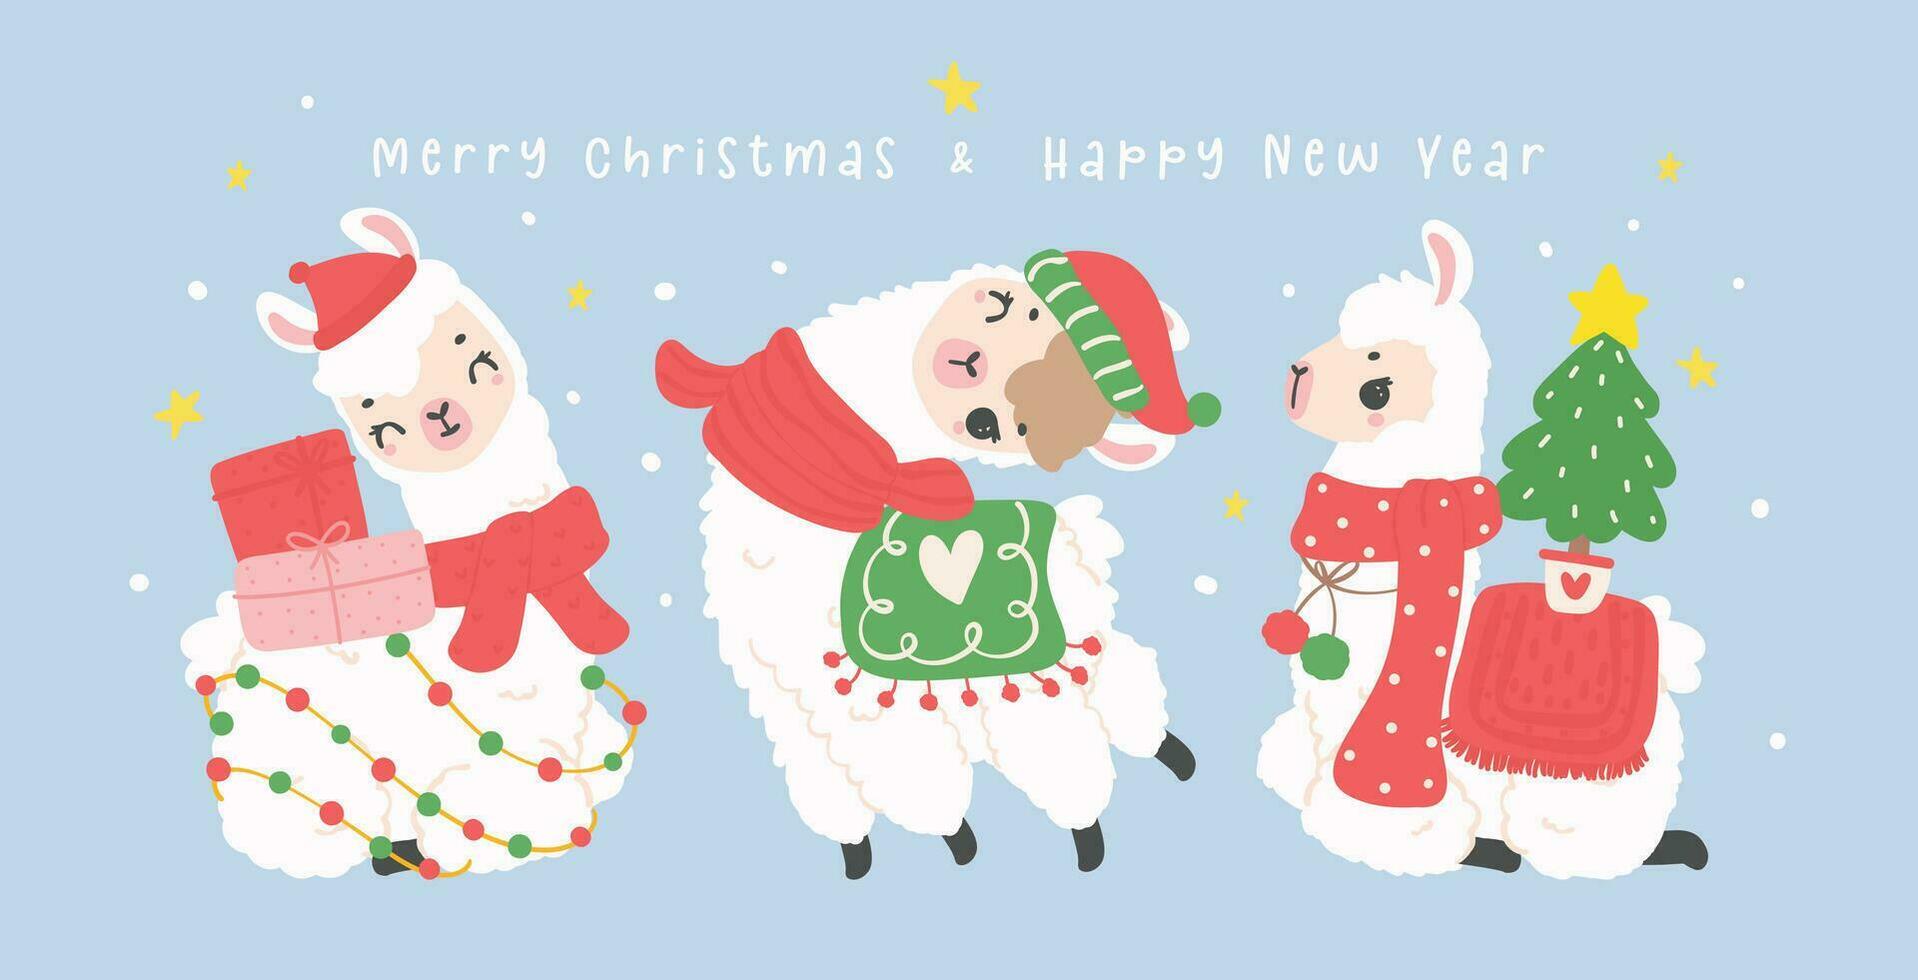 linda Navidad llamas saludo tarjeta bandera en invierno tema, kawaii contento nuevo año dibujos animados animal mano dibujo ilustración vector